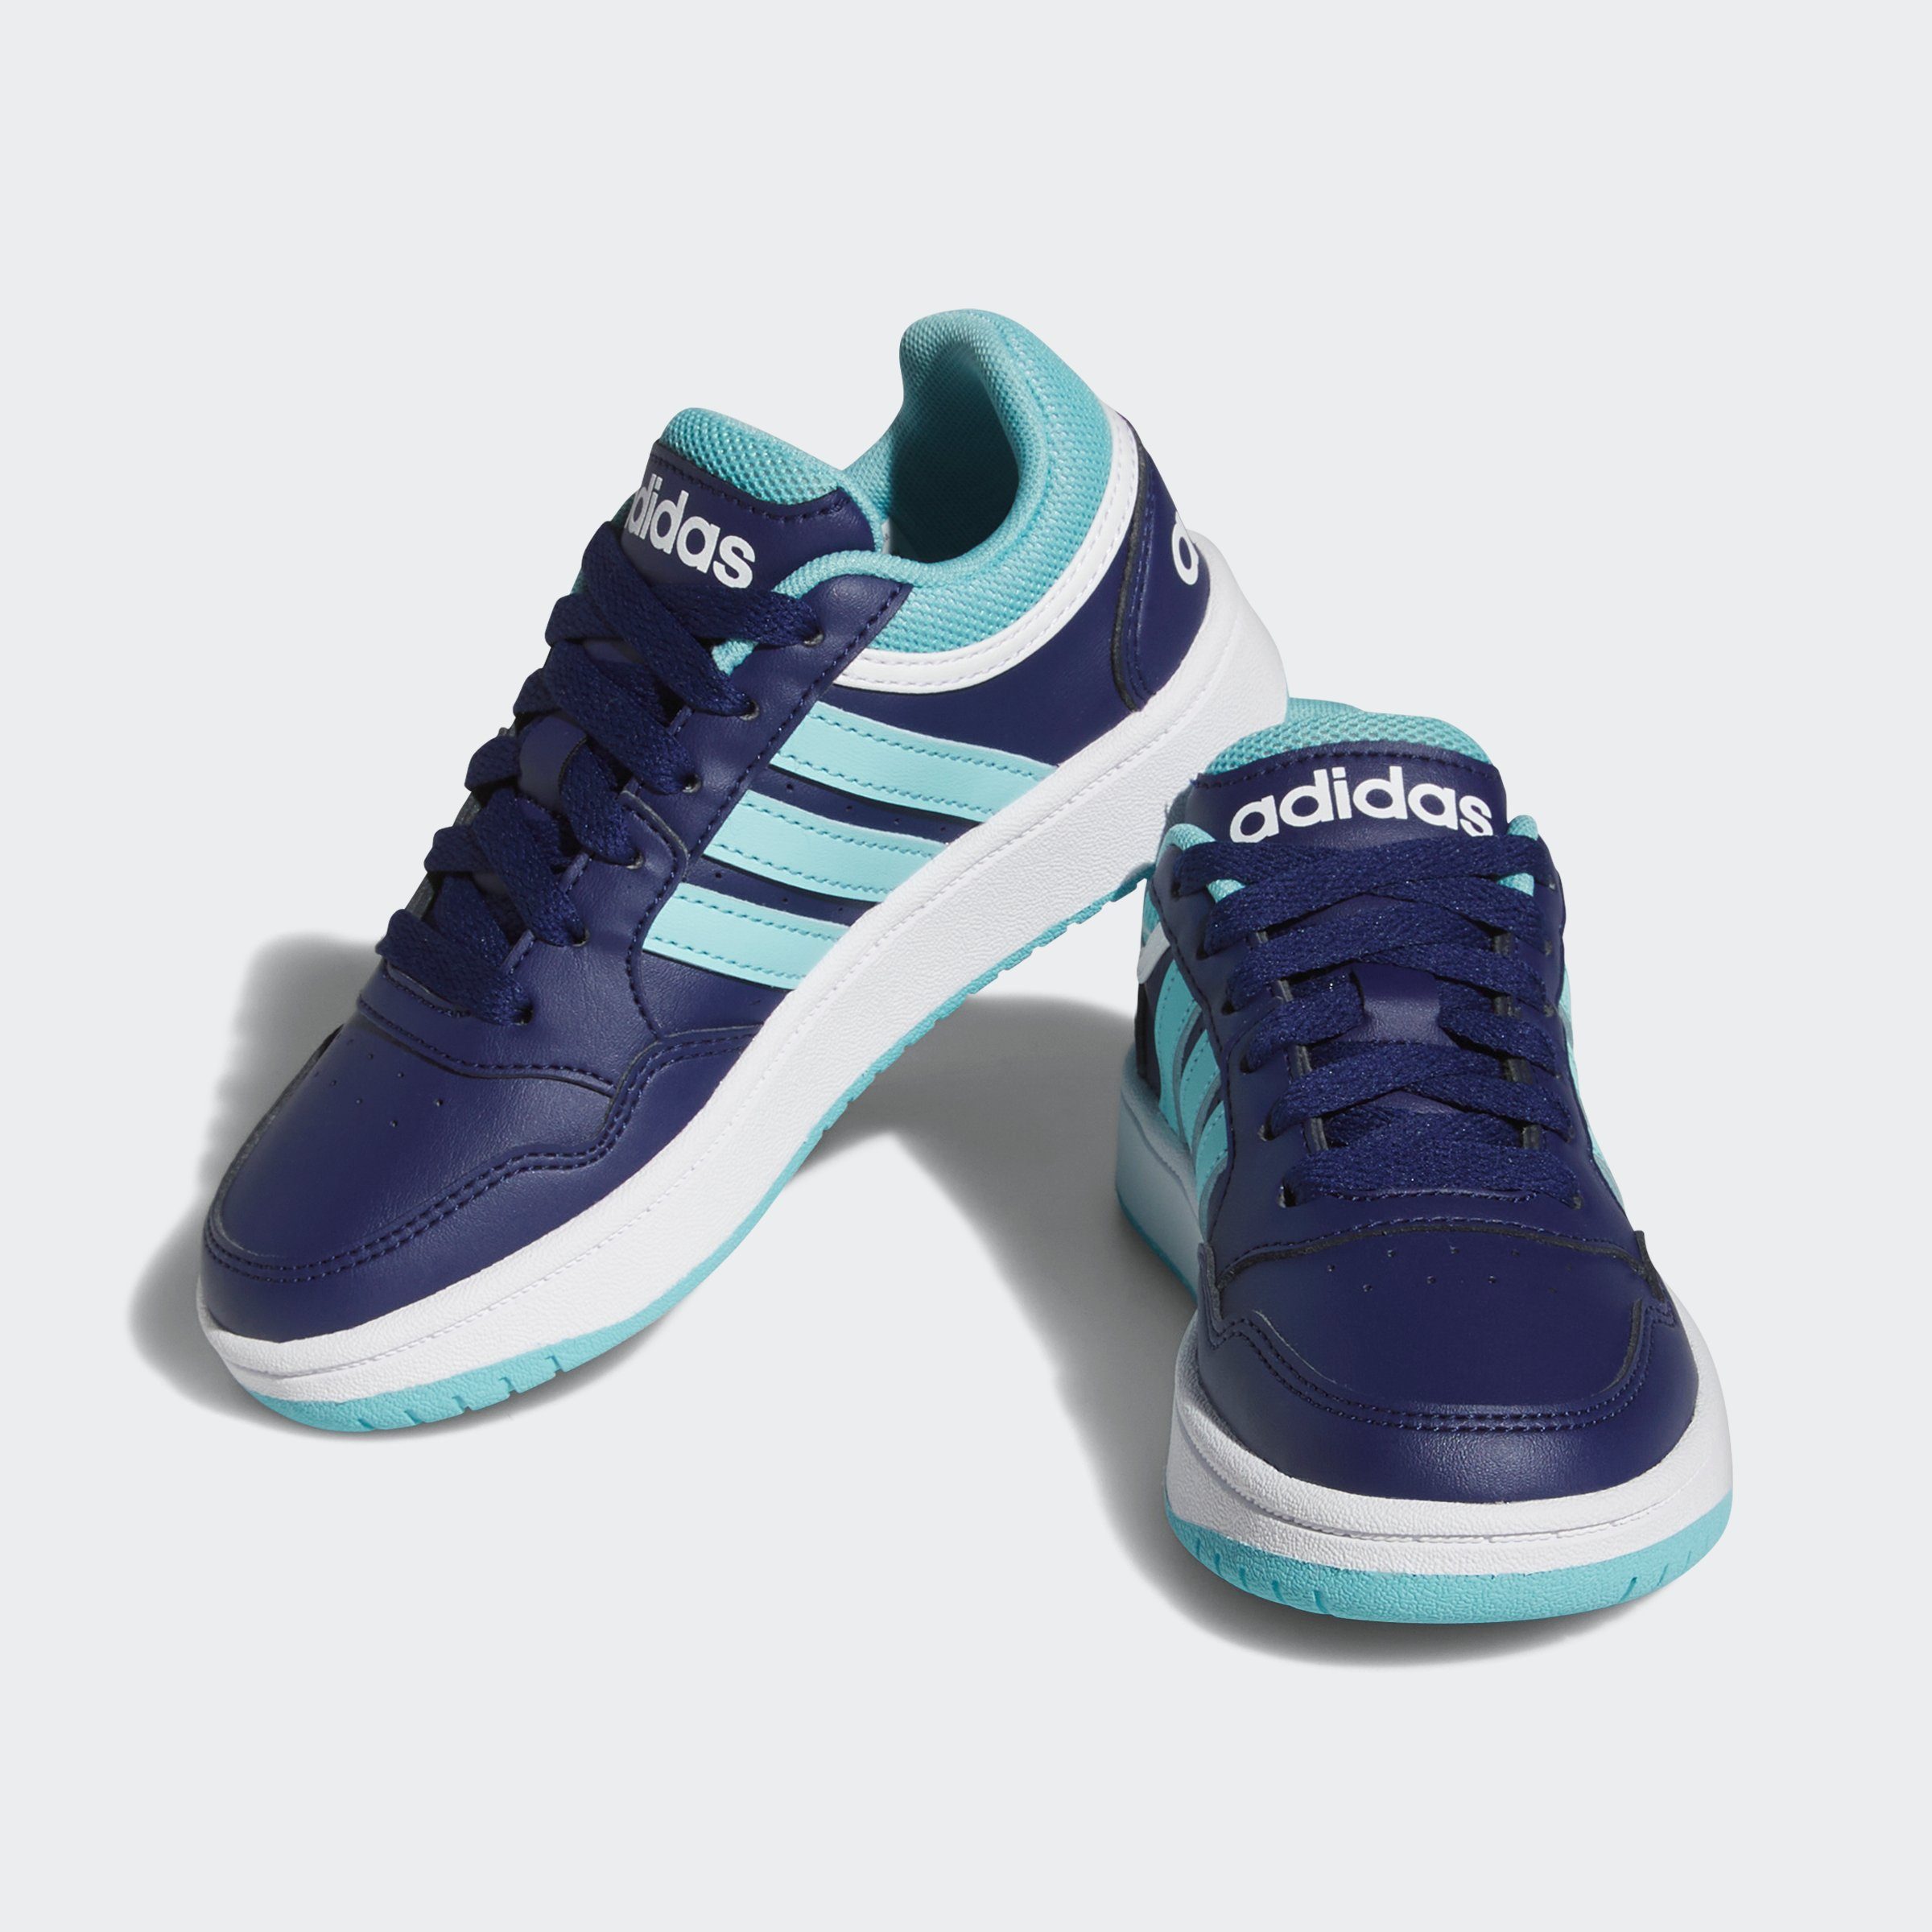 HOOPS Sneaker Cloud Dark adidas / Sportswear Aqua Blue Light / White